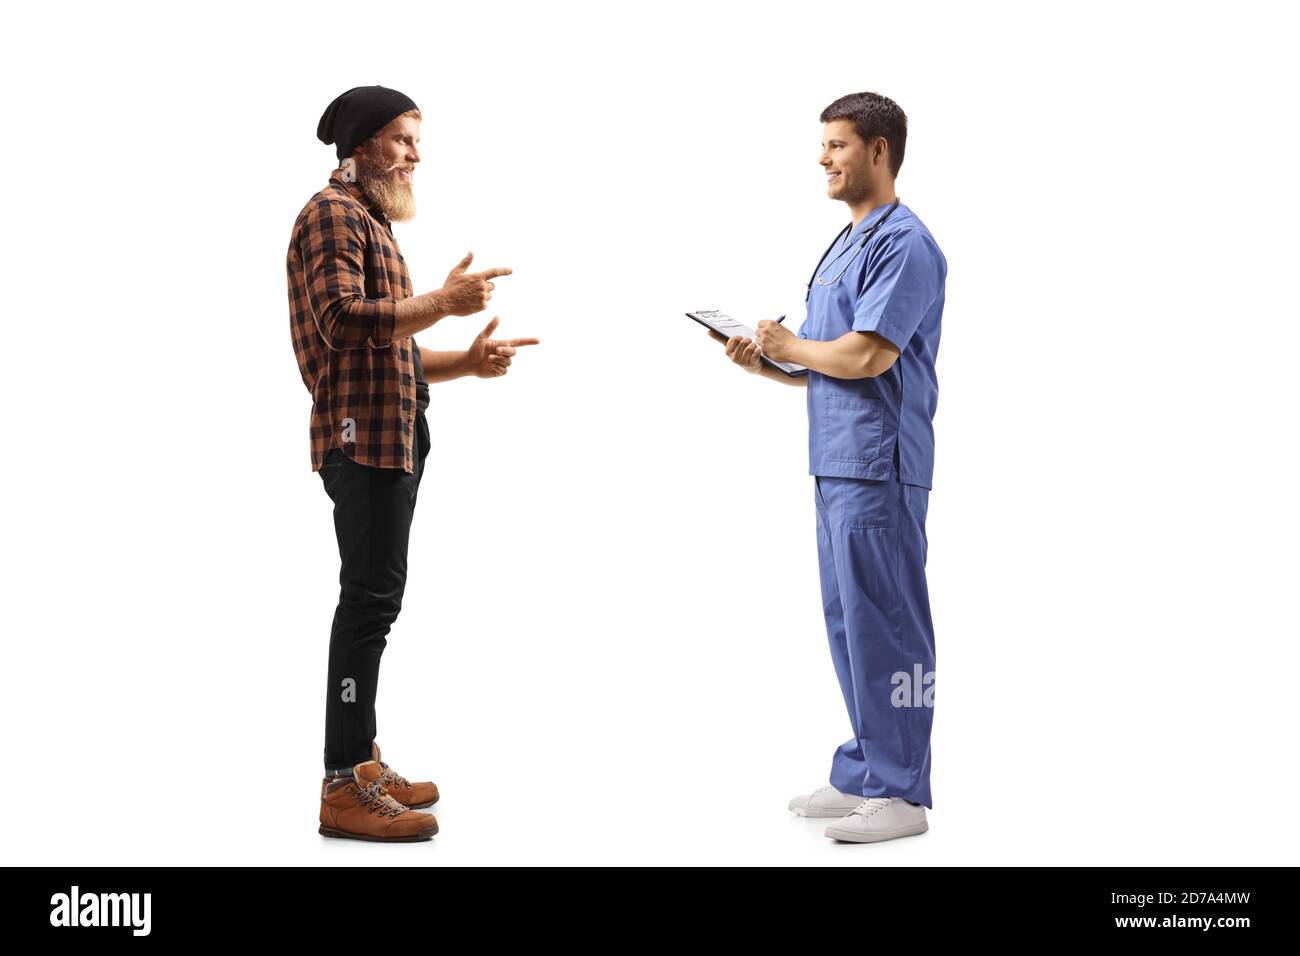 Ganzkörperaufnahme eines bärtigen jungen Mannes im Stehen Und im Gespräch mit einem Arzt in einer blauen Uniform isoliert Auf weißem Hintergrund Stockfoto